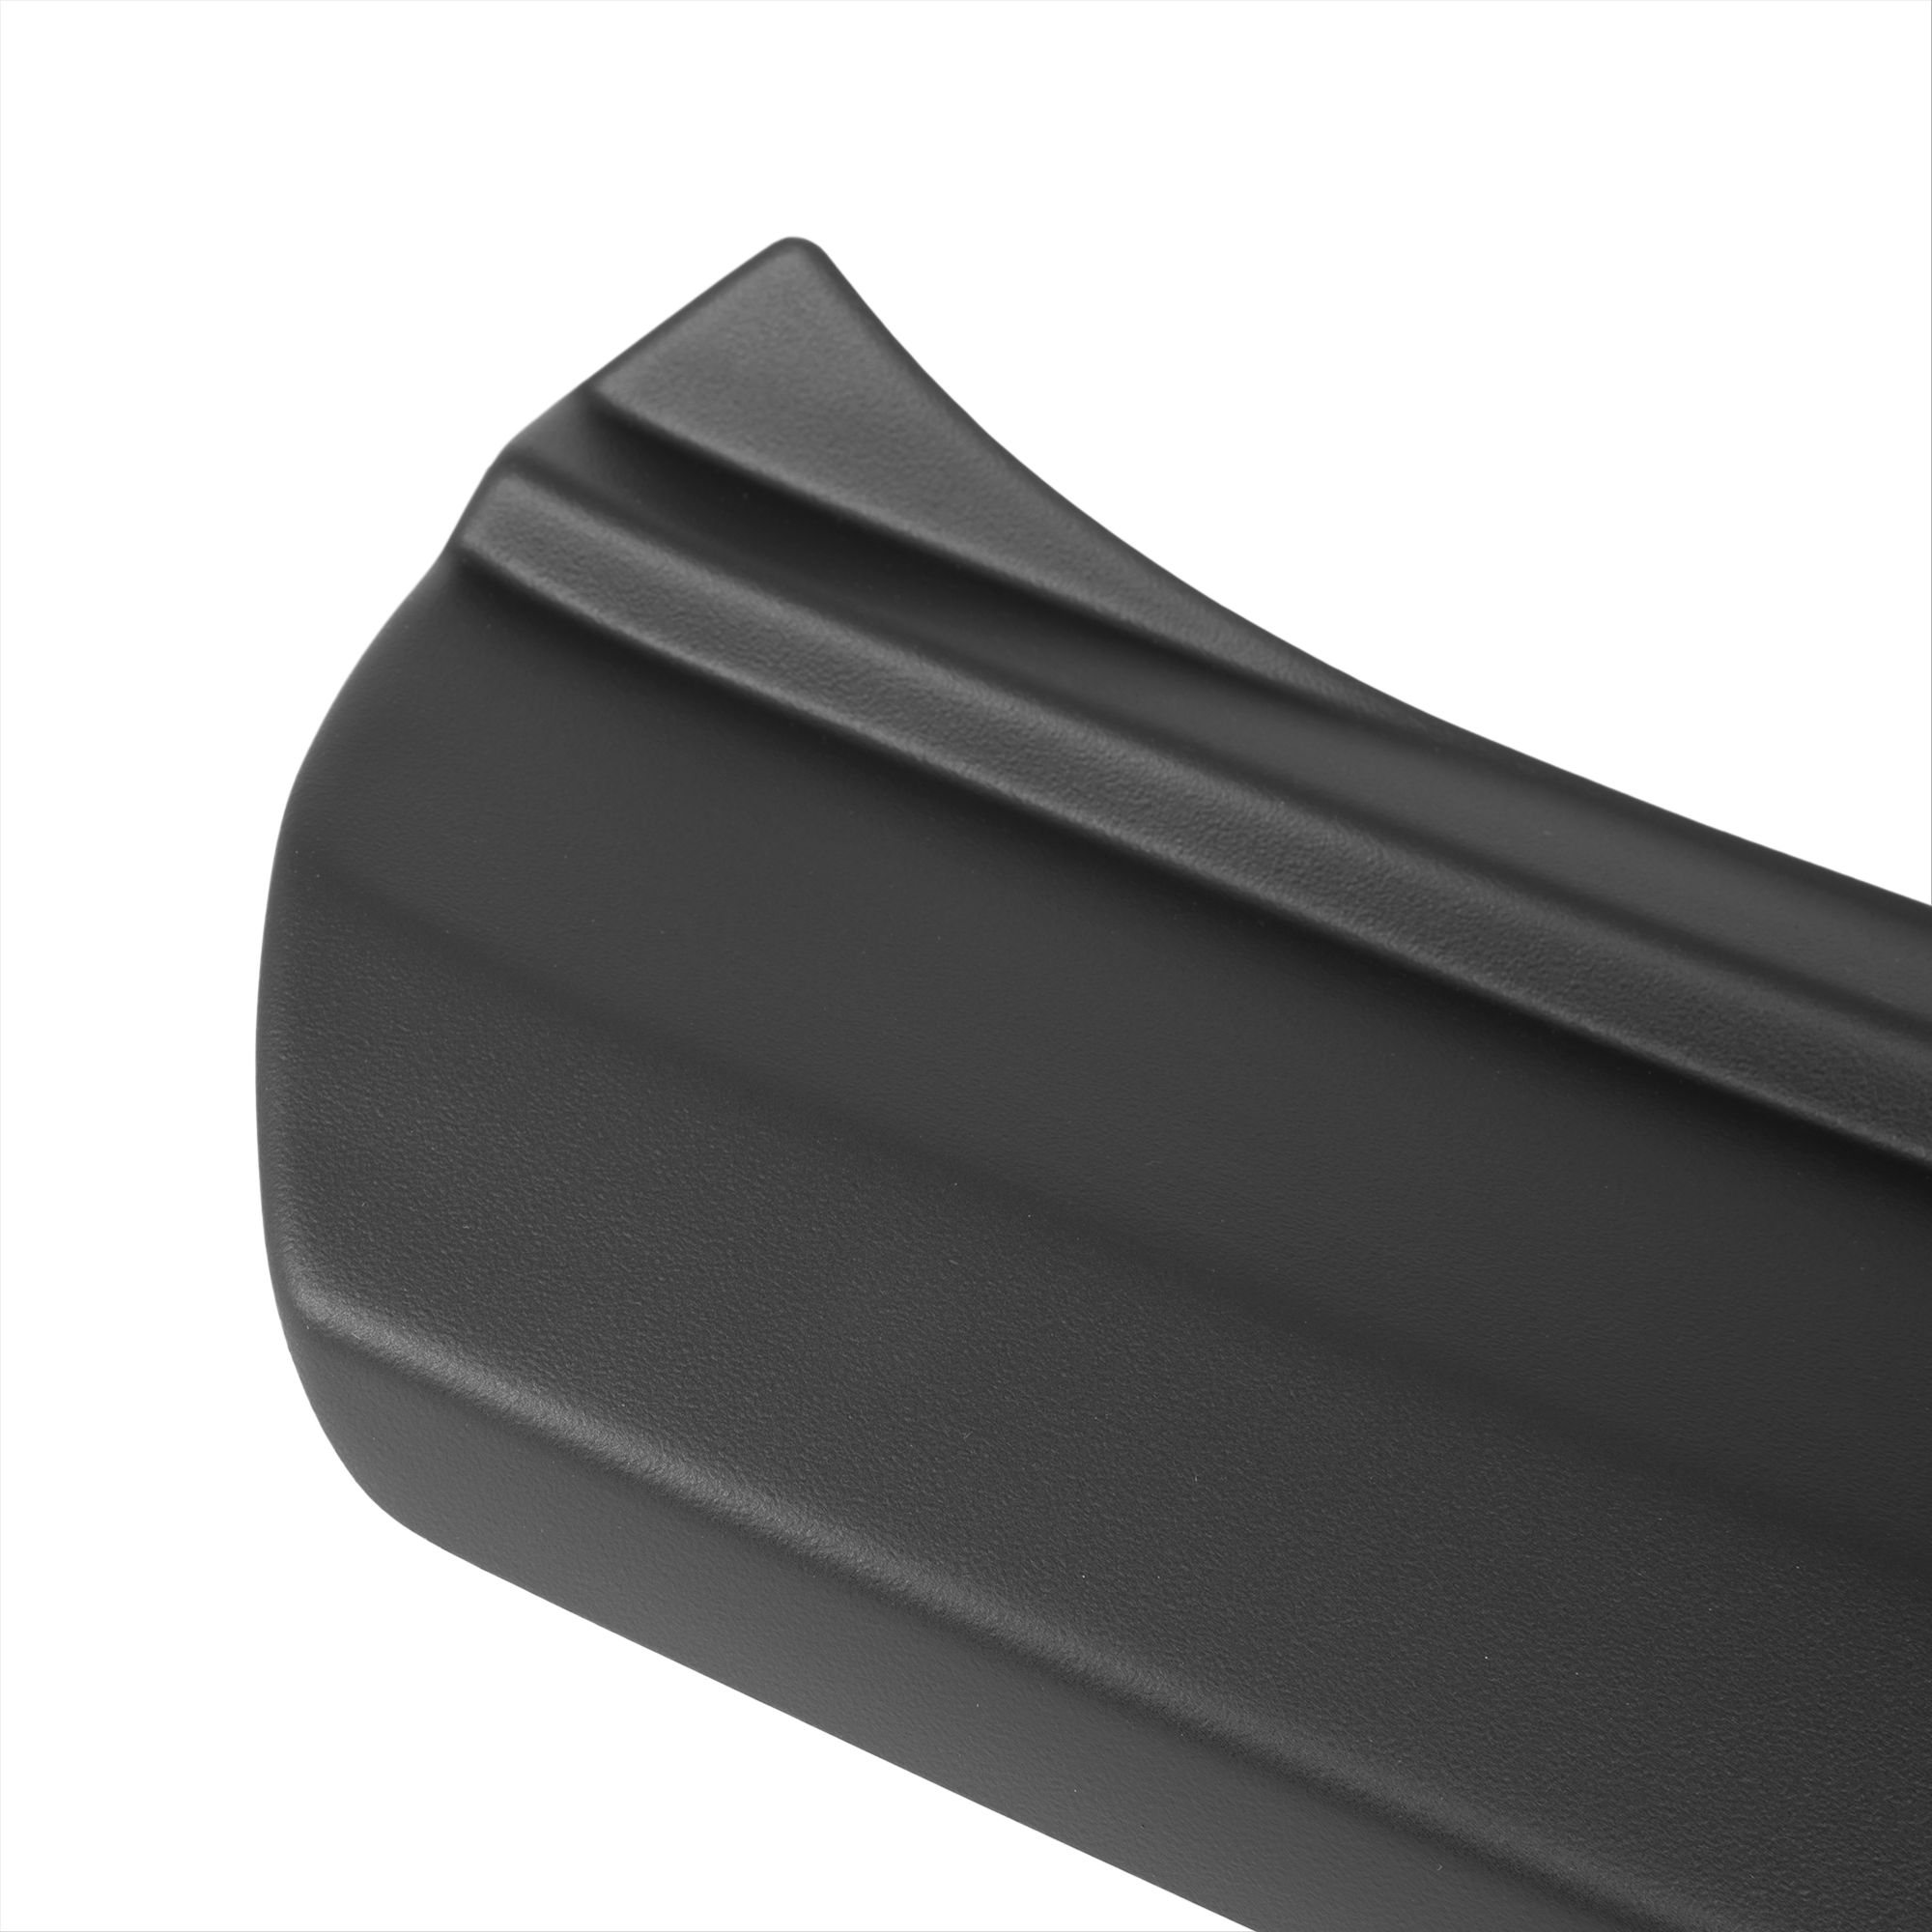 Ladekantenschutz mit Abkantung passend für Volvo C30 ab BJ. 2006 bis  05.2012 ABS Farbe schwarz